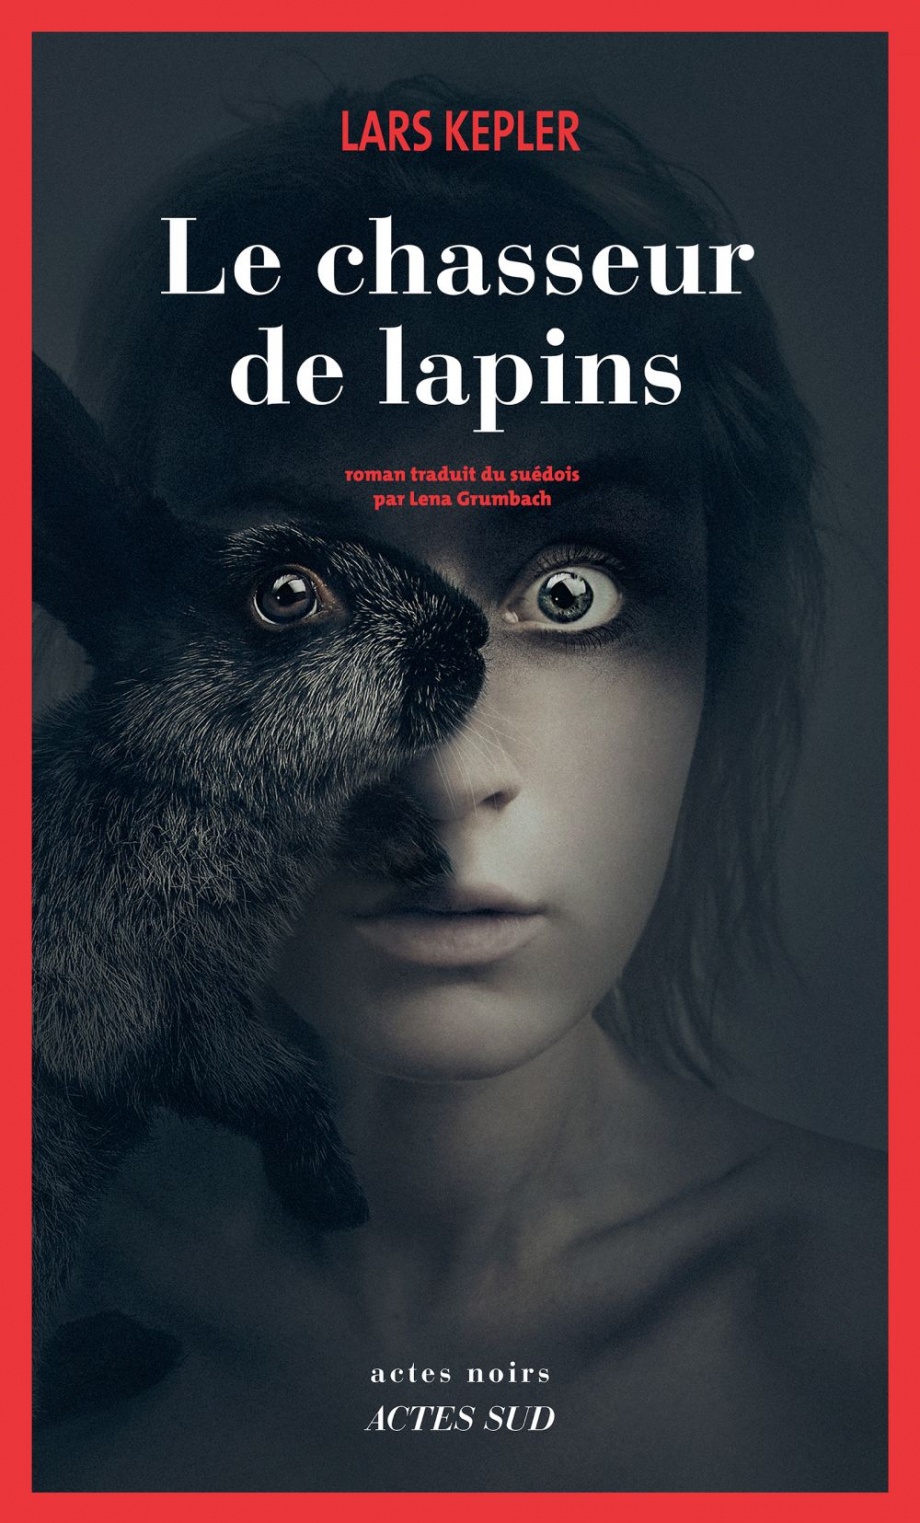 Le chasseur de lapins de Lars Kepler